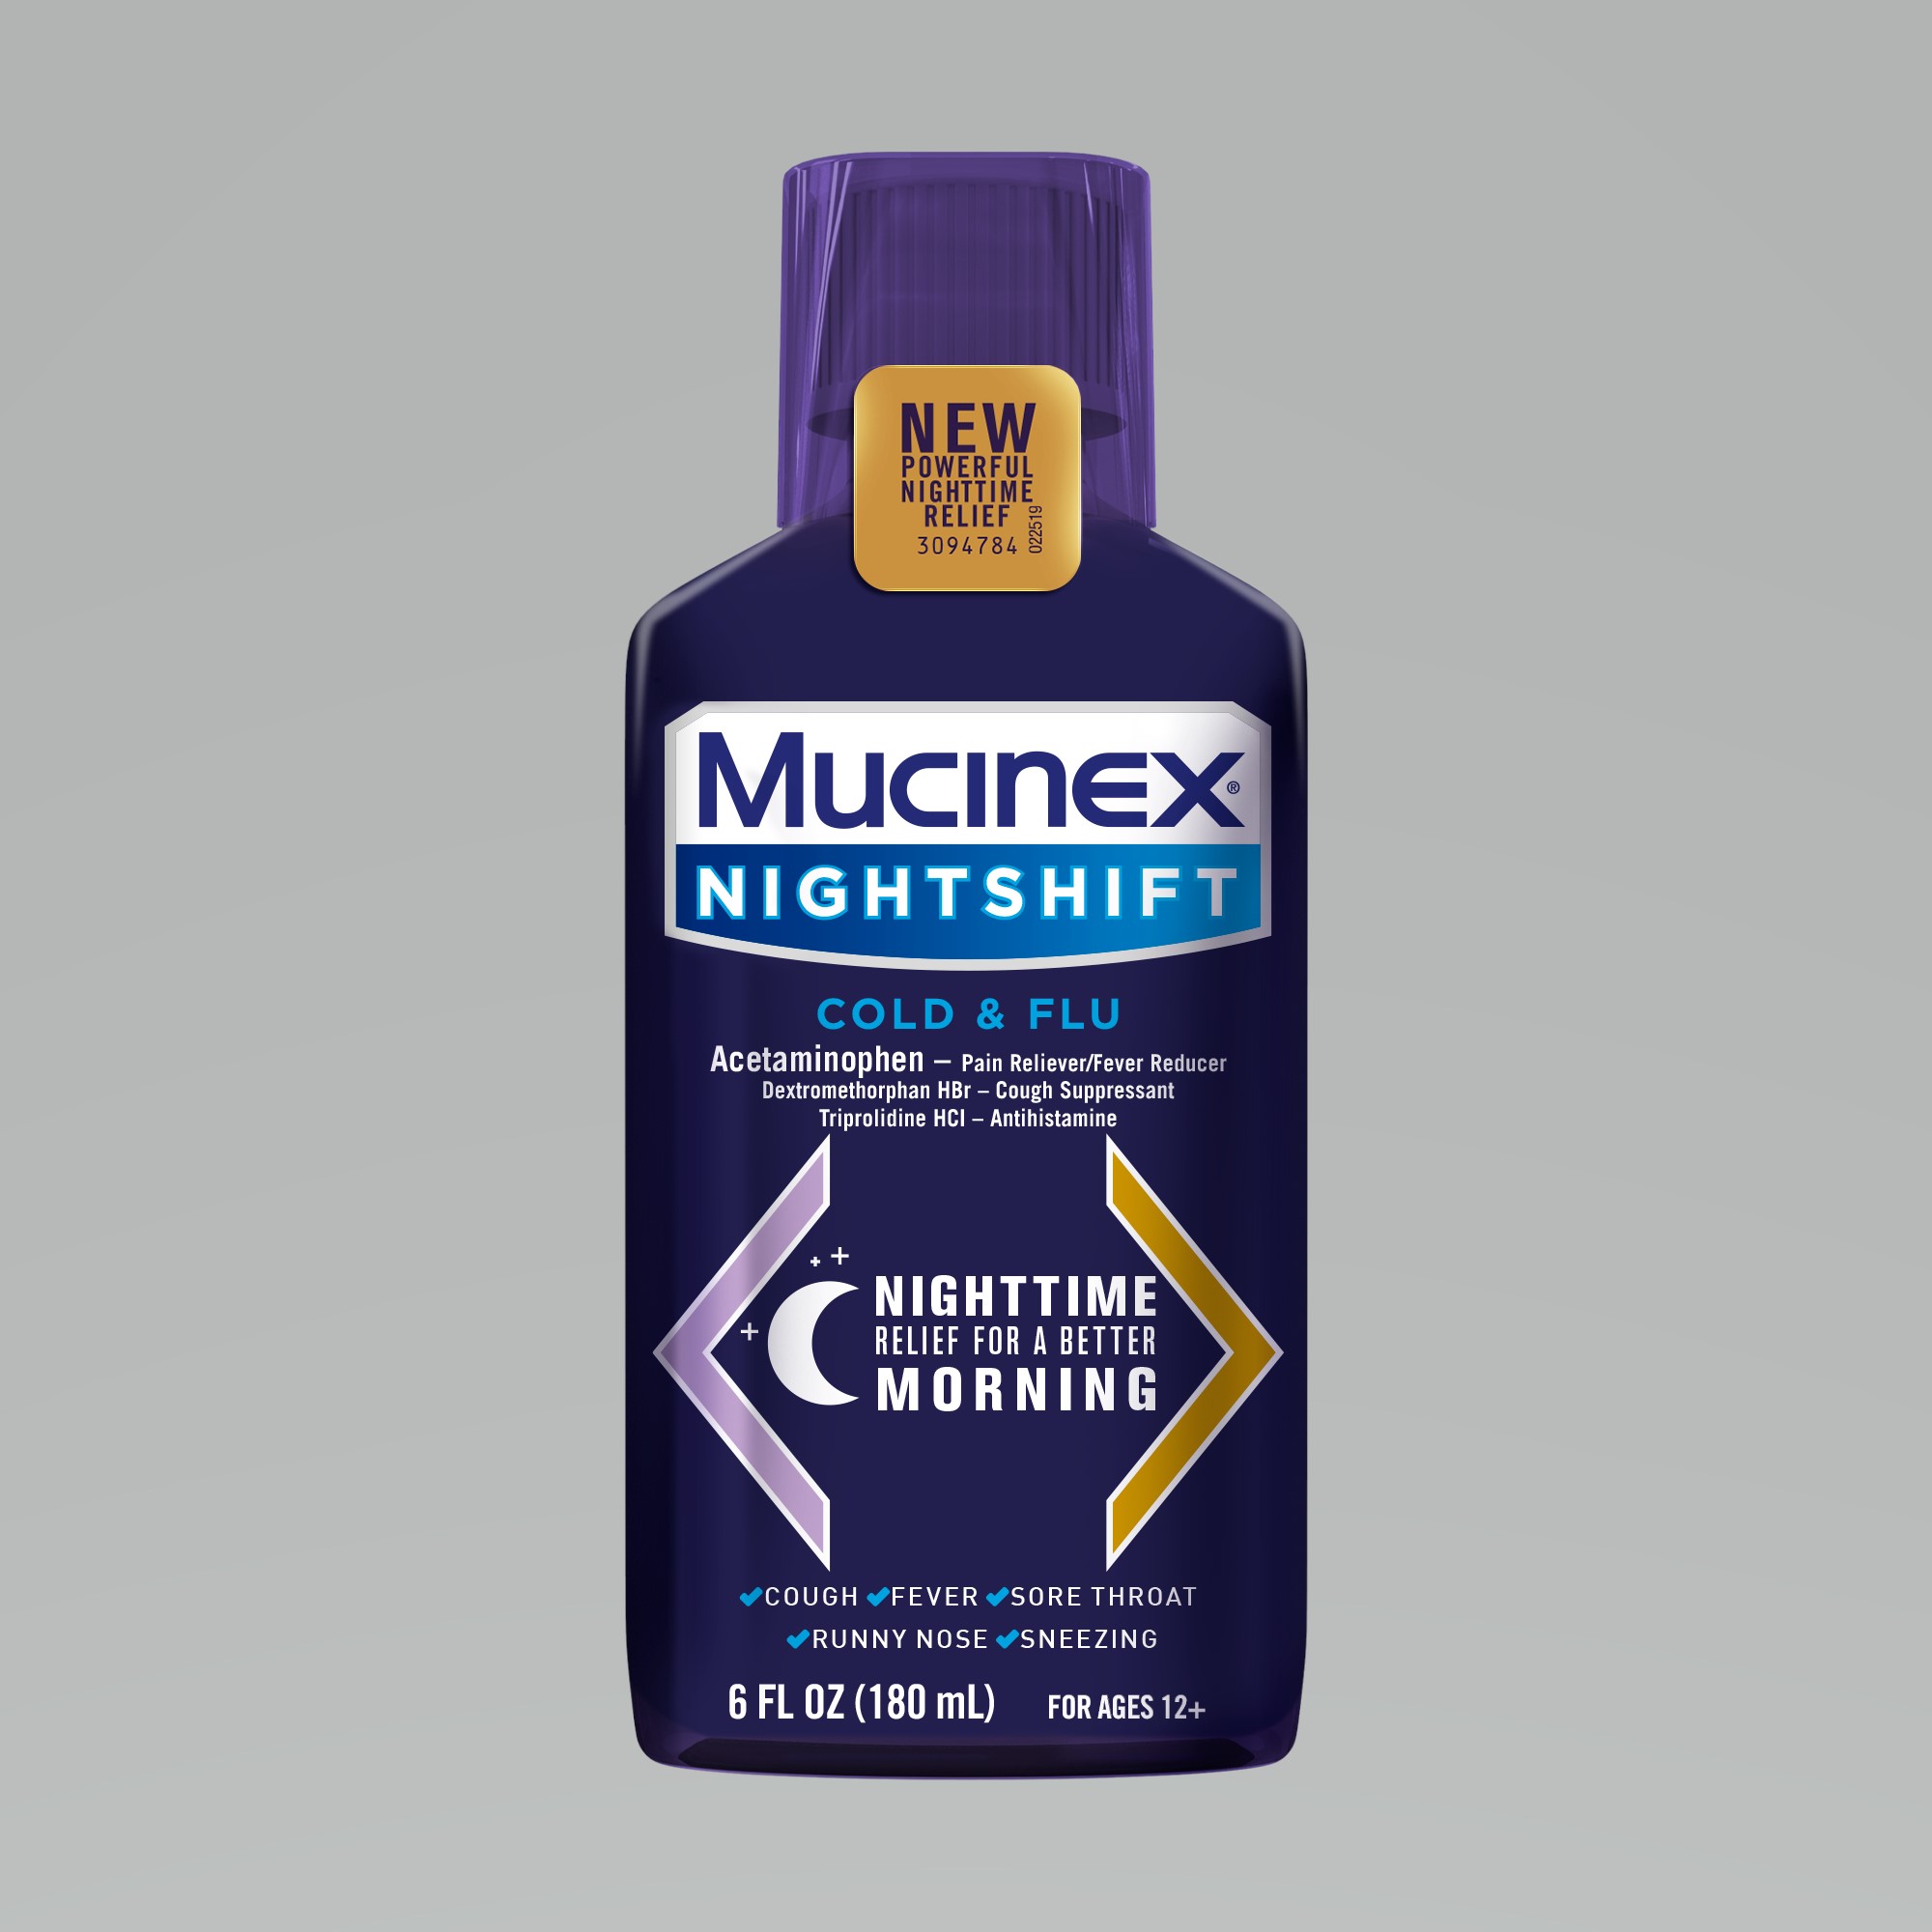 MUCINEX Nightshift Cold  Flu